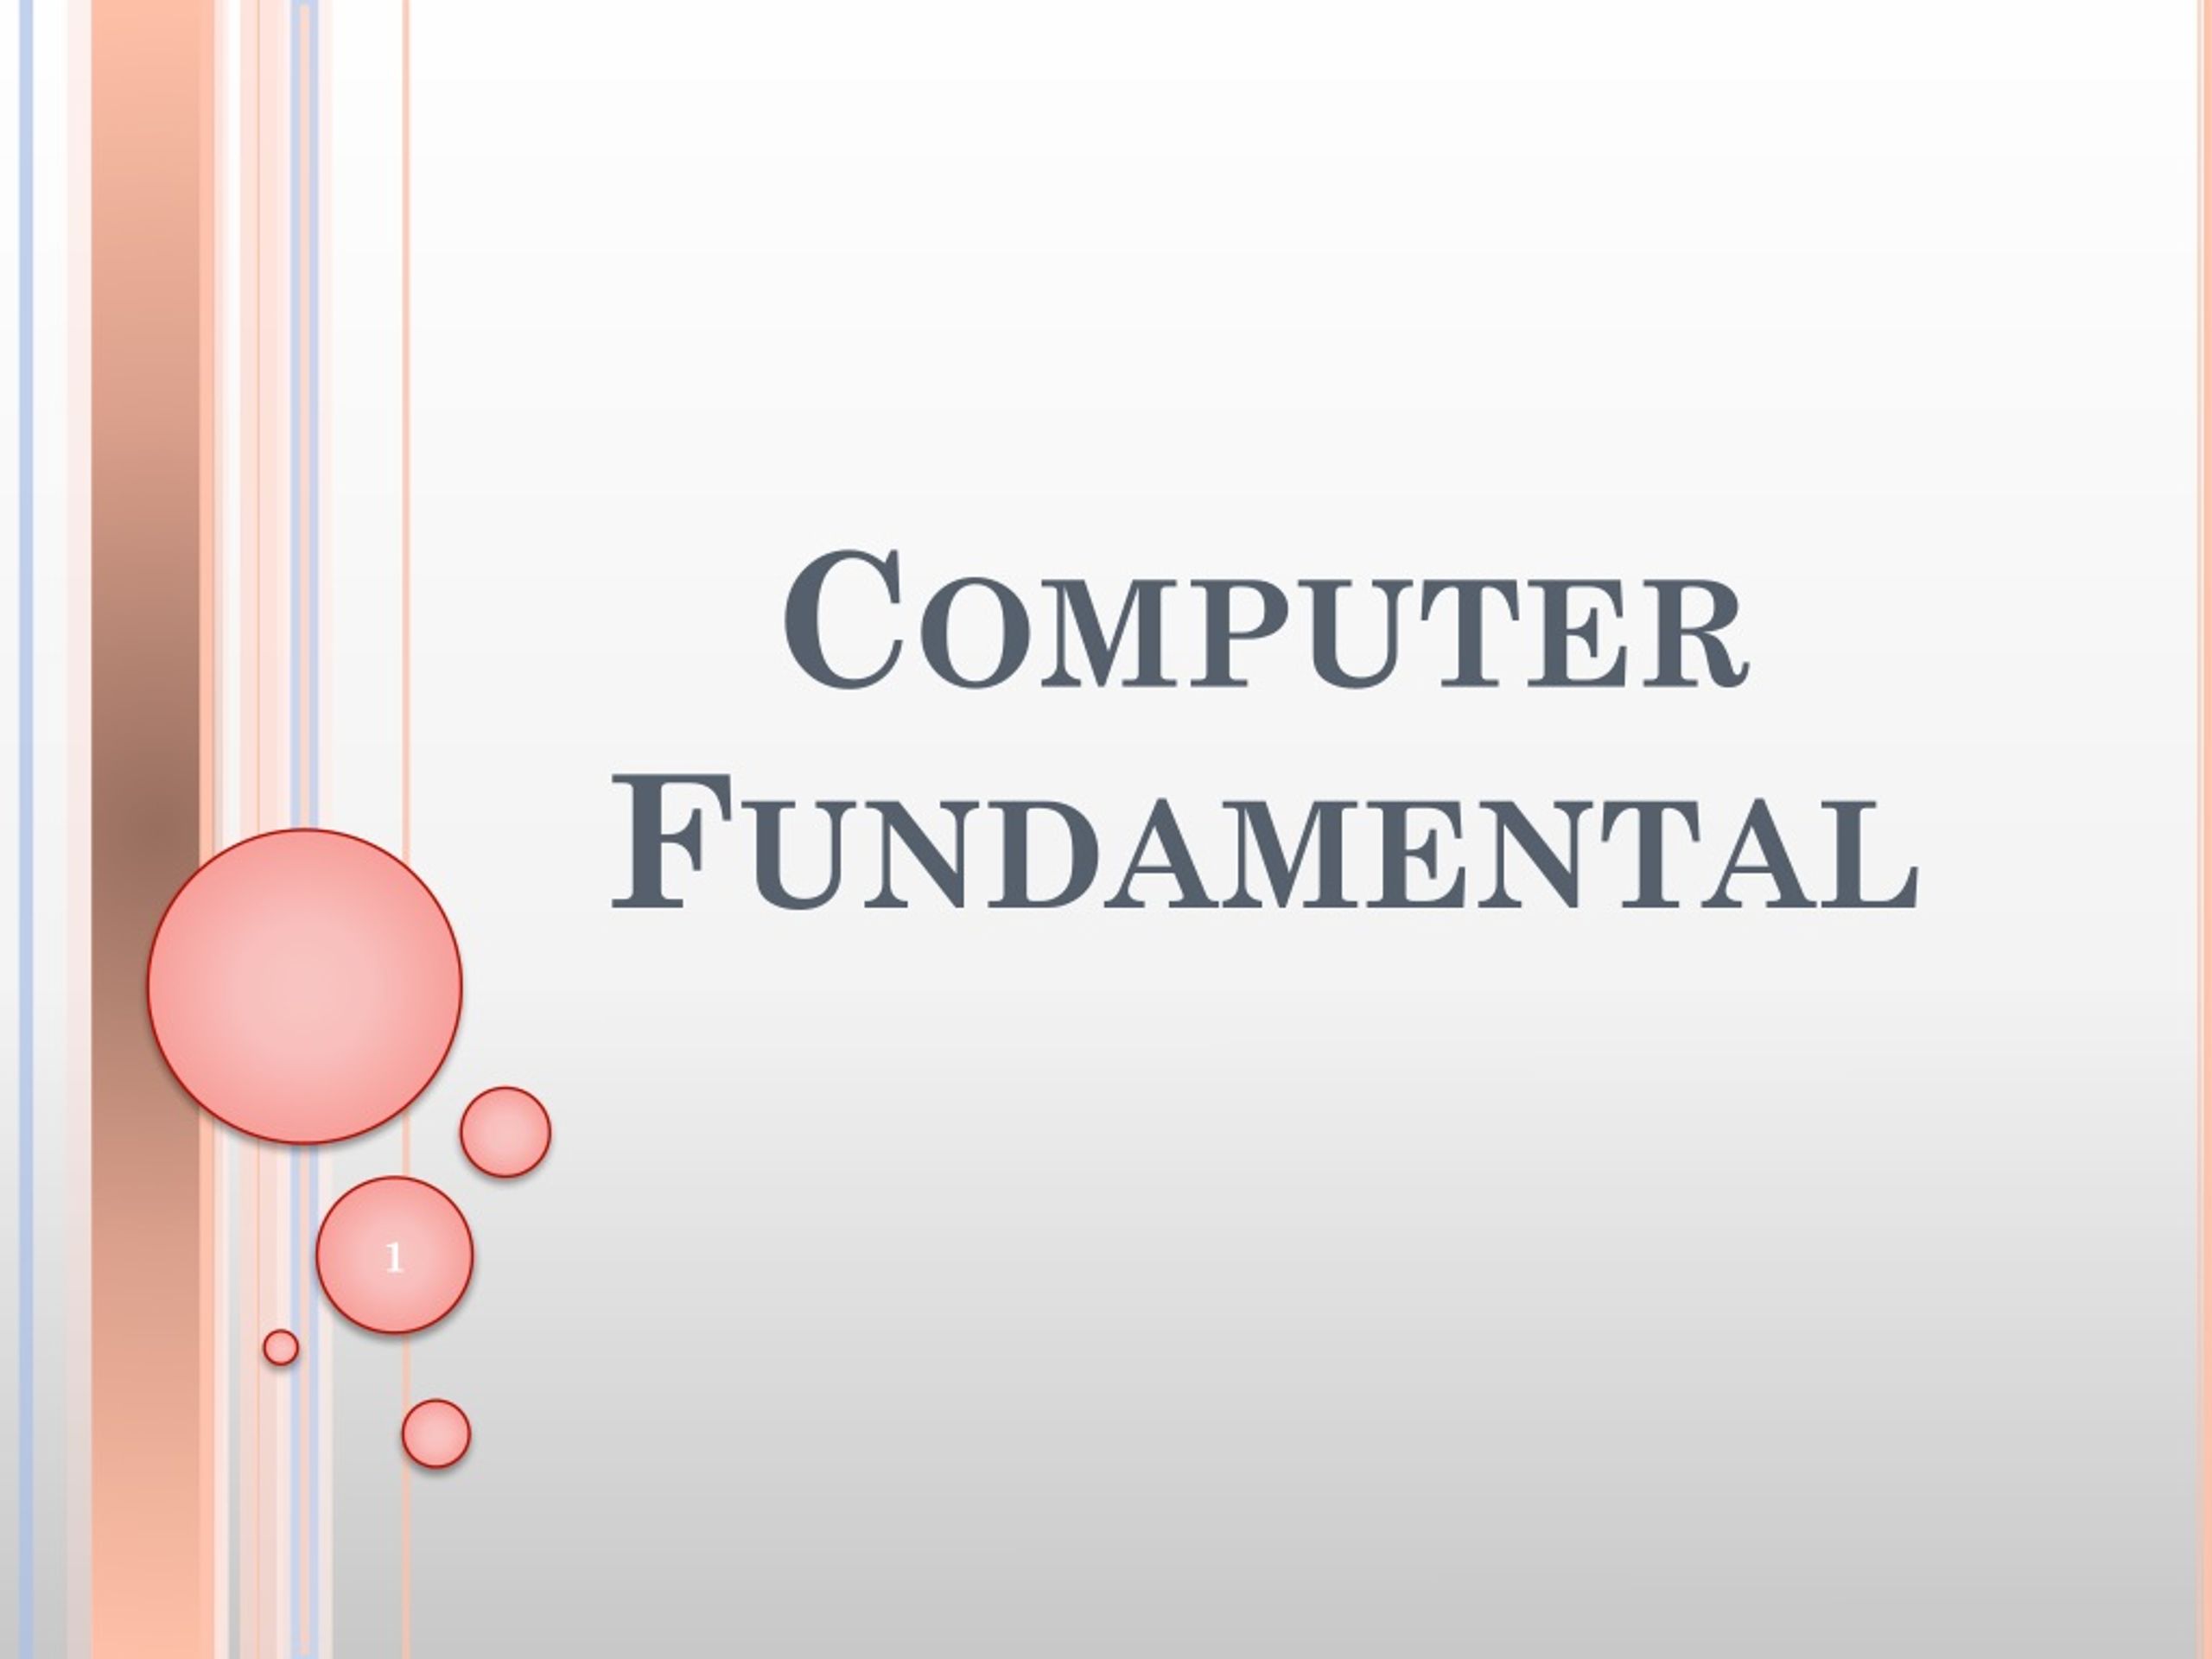 presentation slides on fundamental of computer